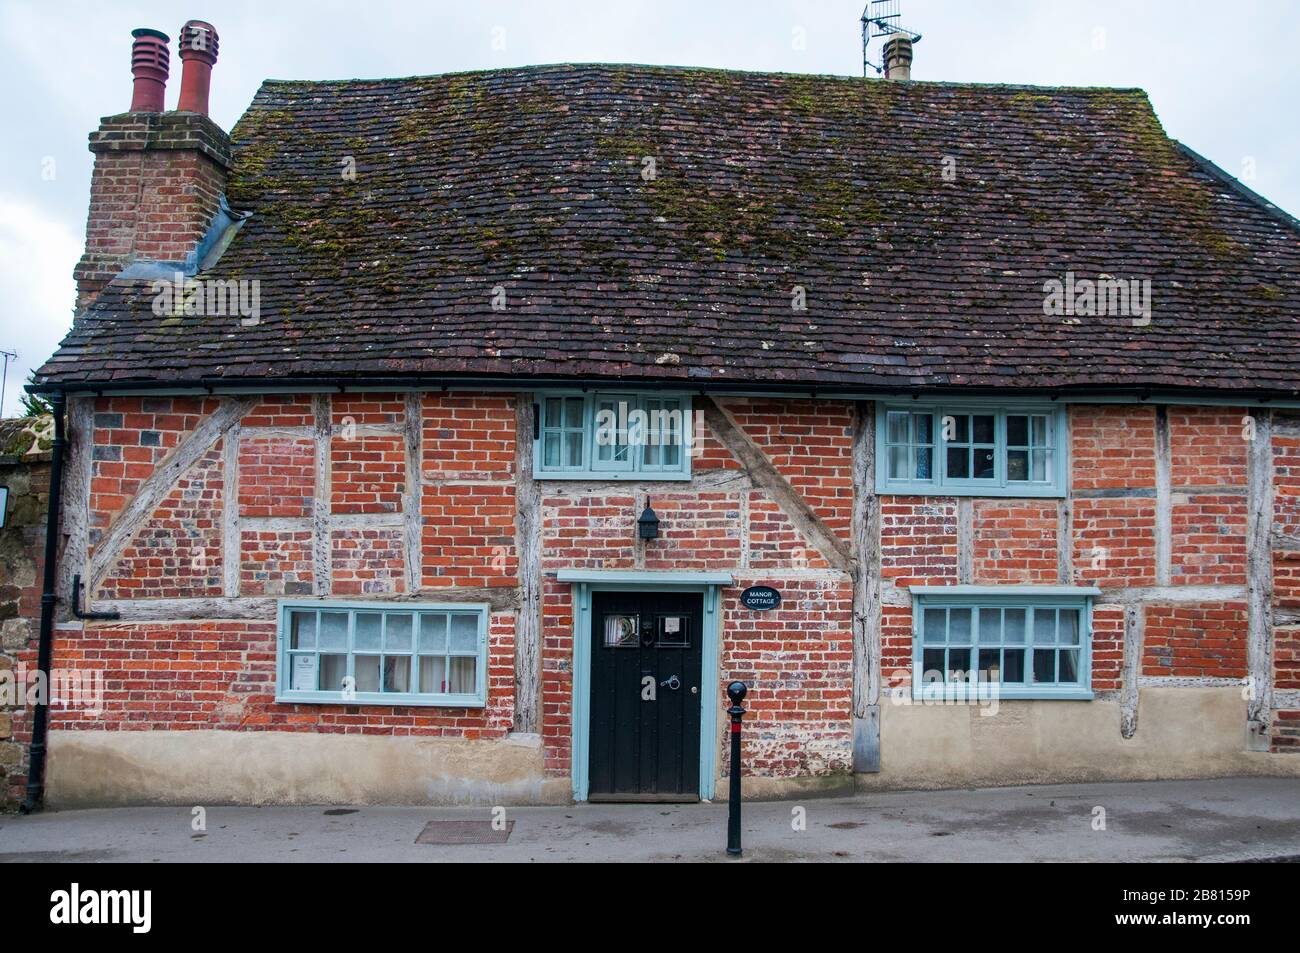 Un cottage à colombages rouille dans le village de Shere à Surrey, dans le sud de l'Angleterre Banque D'Images